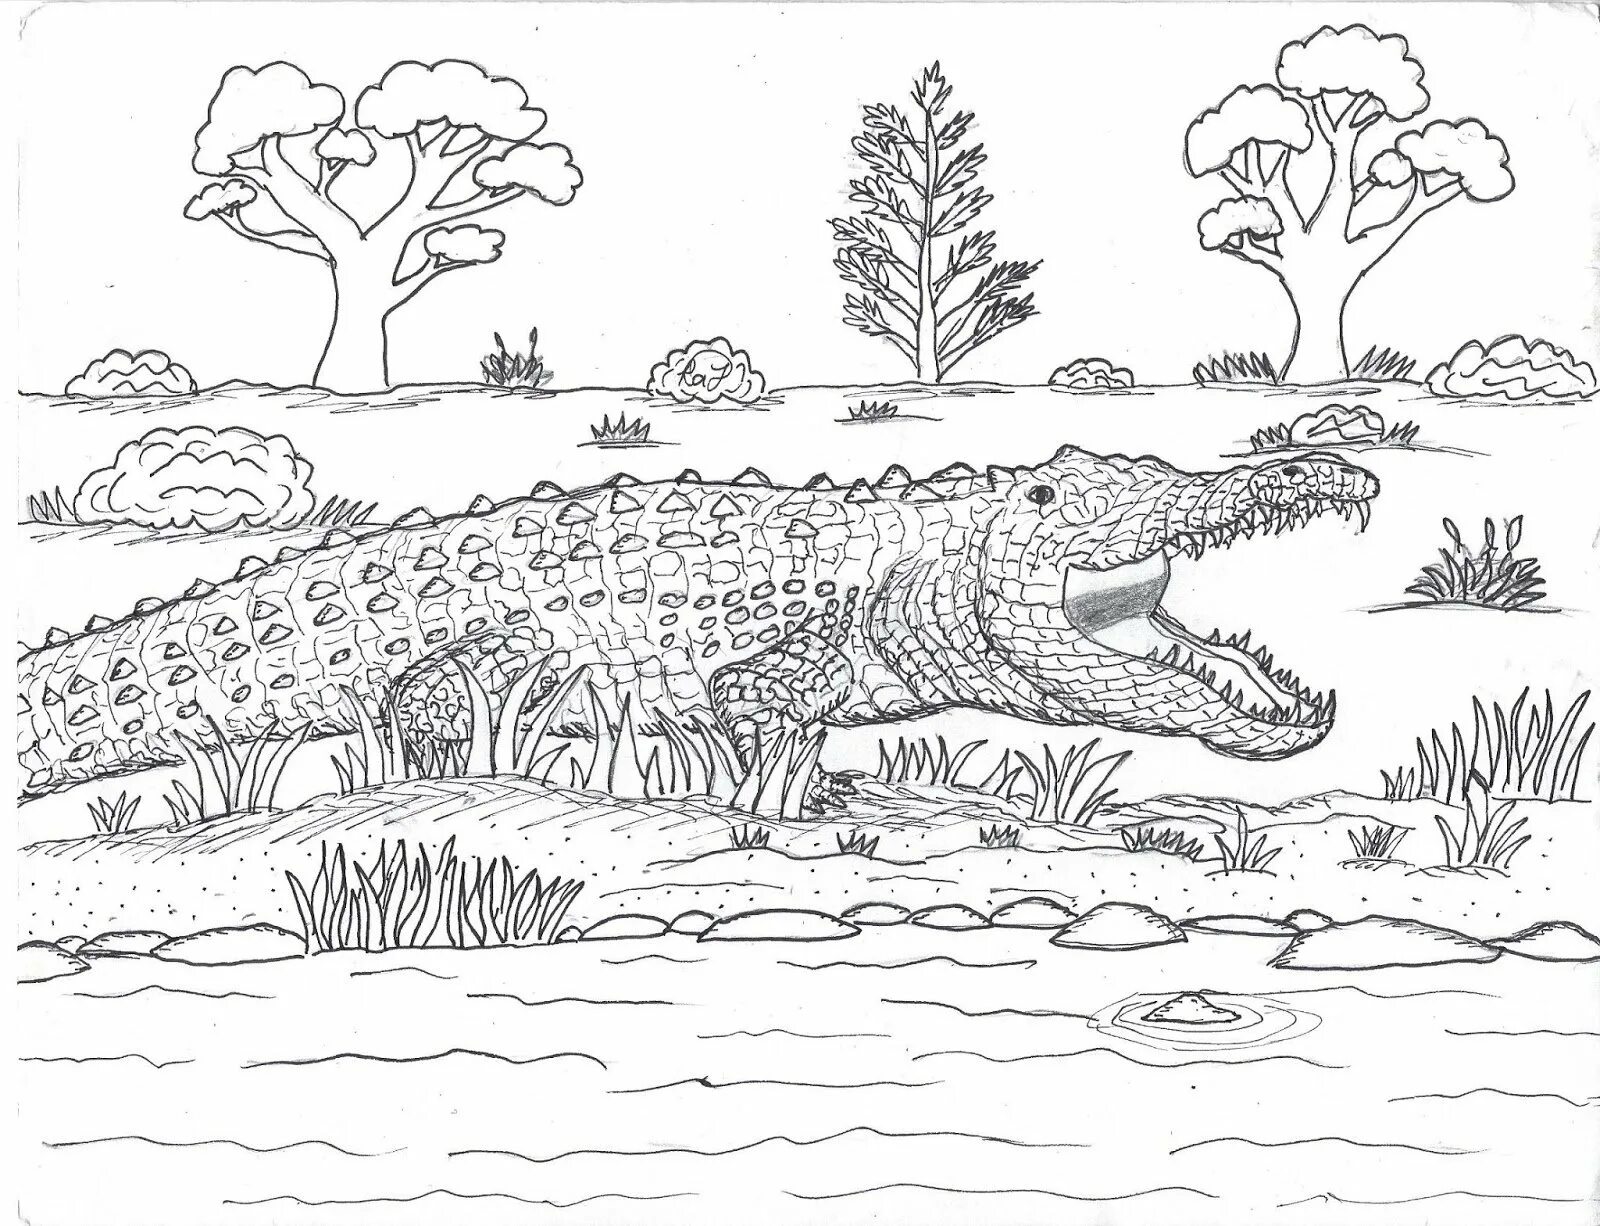 Combed crocodile #1